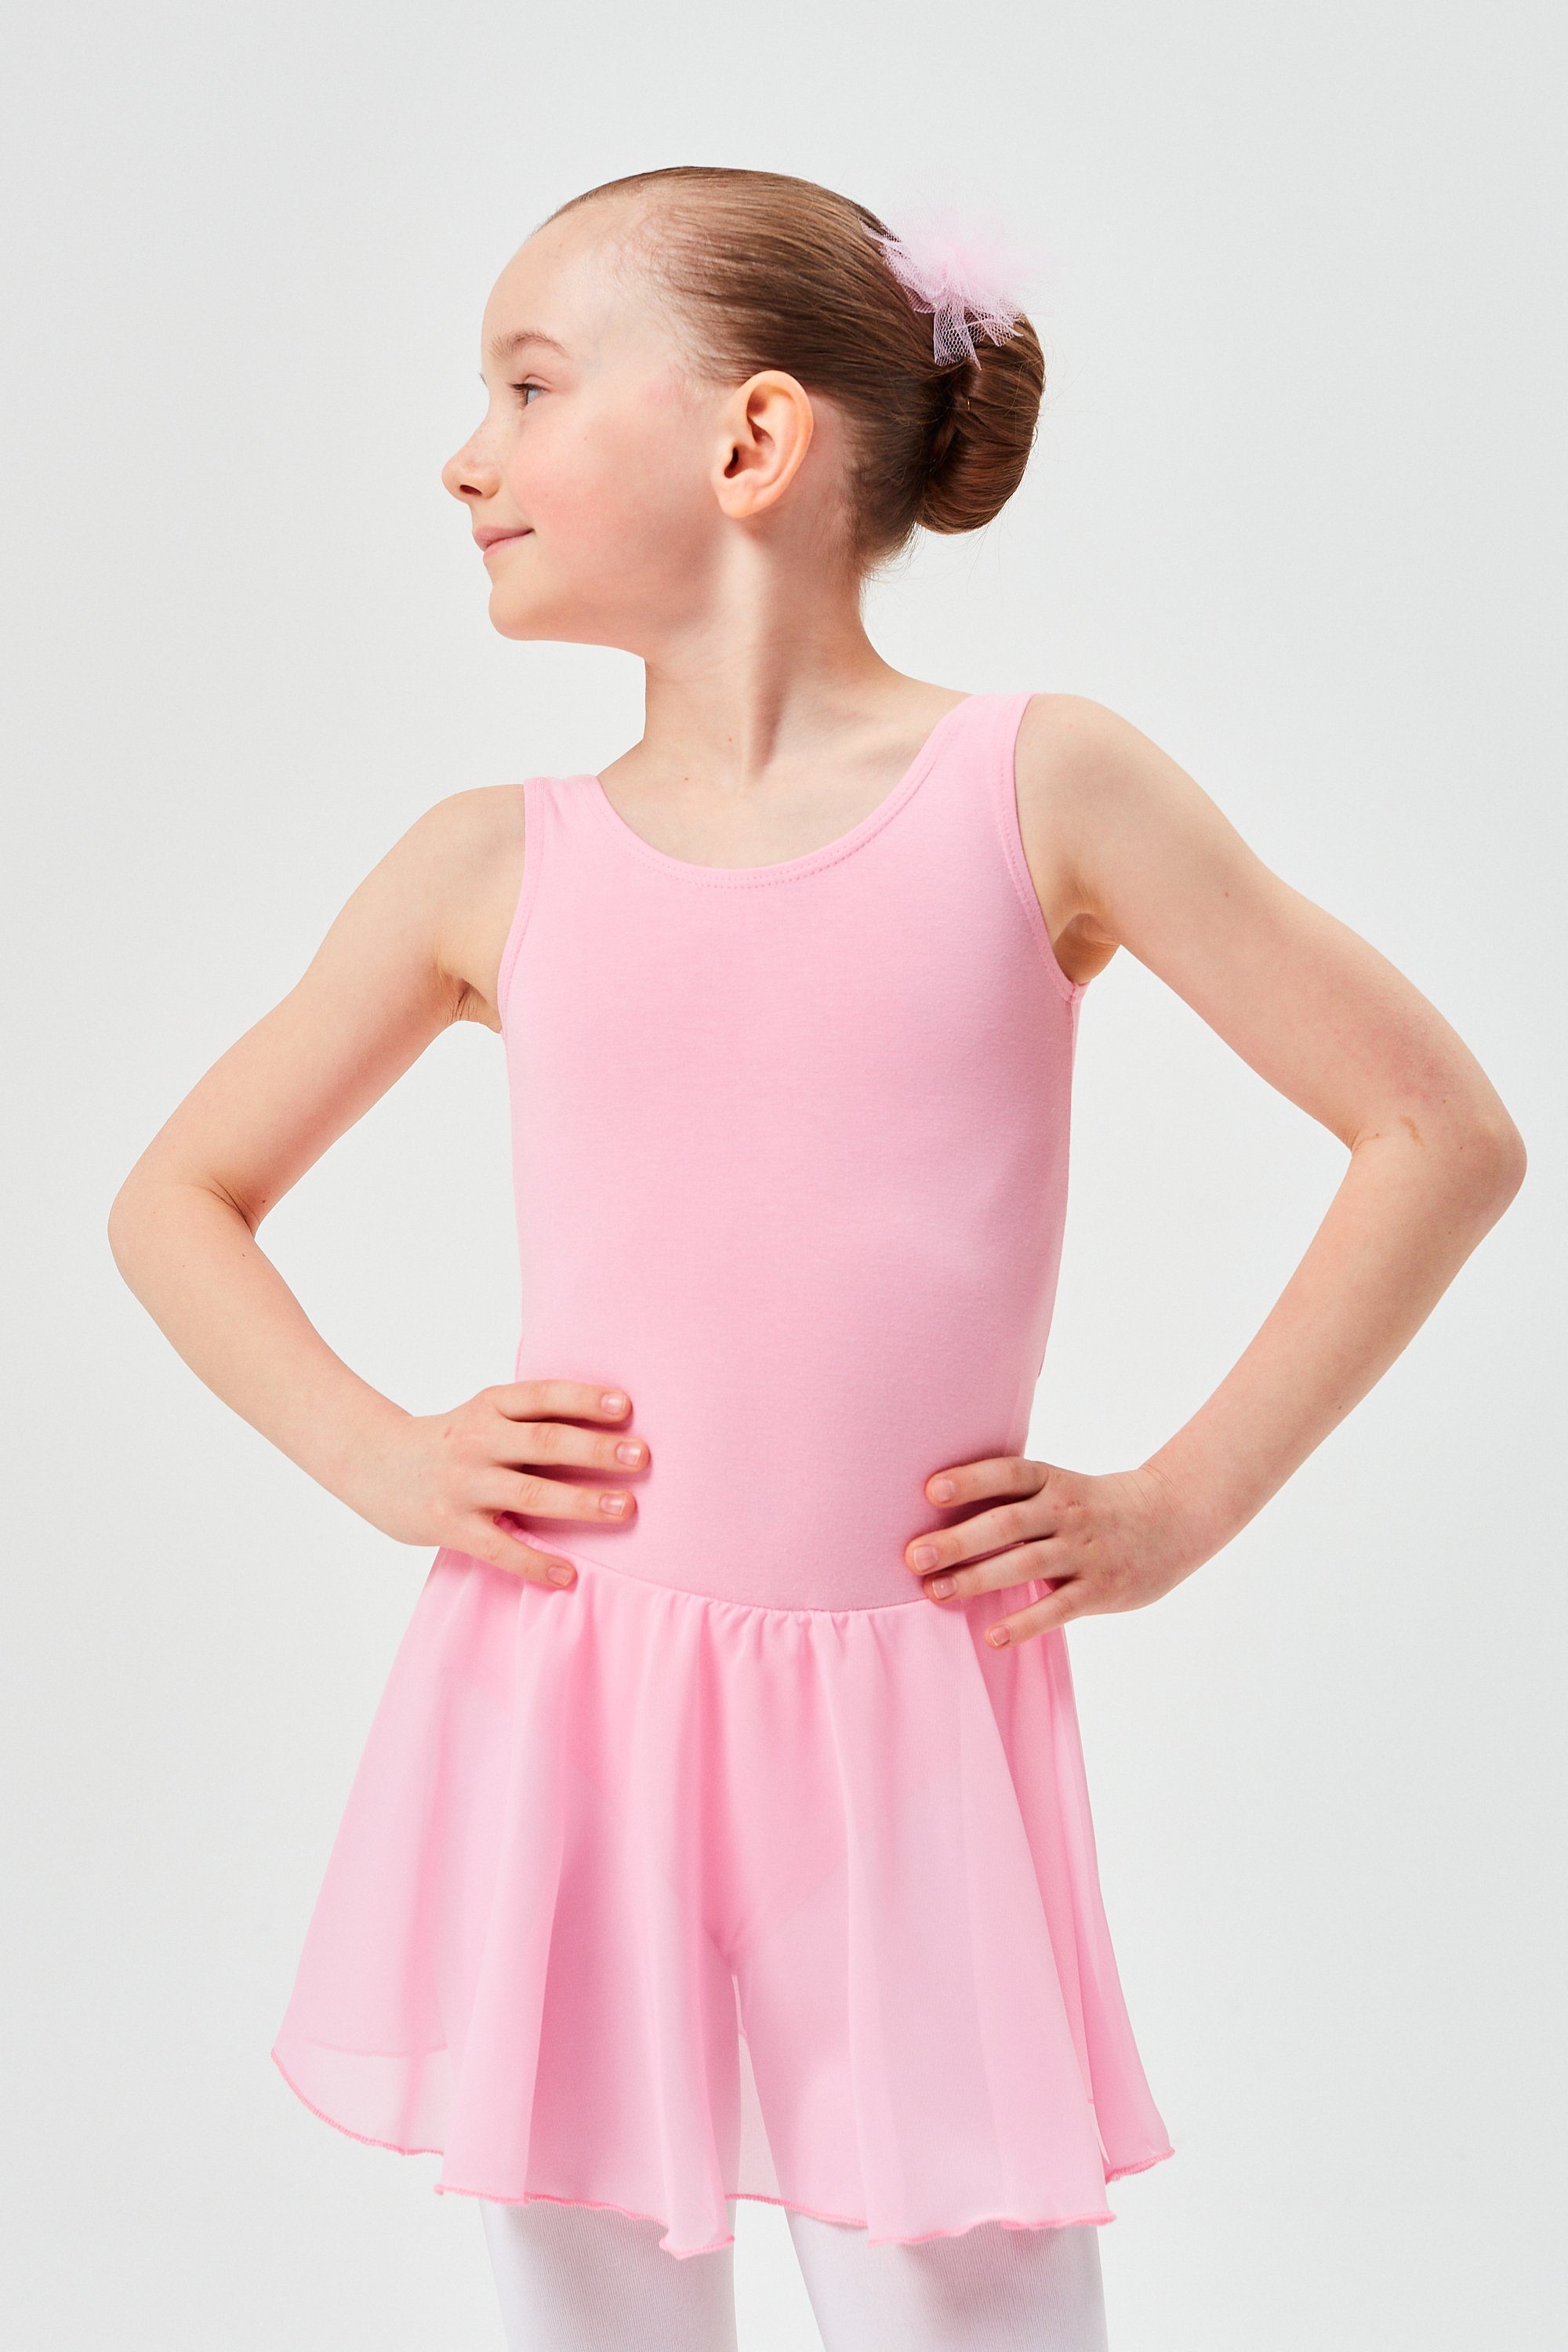 Trikot weichem Chiffon wunderbar Minnie aus rosa Röckchen Ballett Ballettkleid mit Chiffonkleid Mädchen Baumwollmaterial für tanzmuster